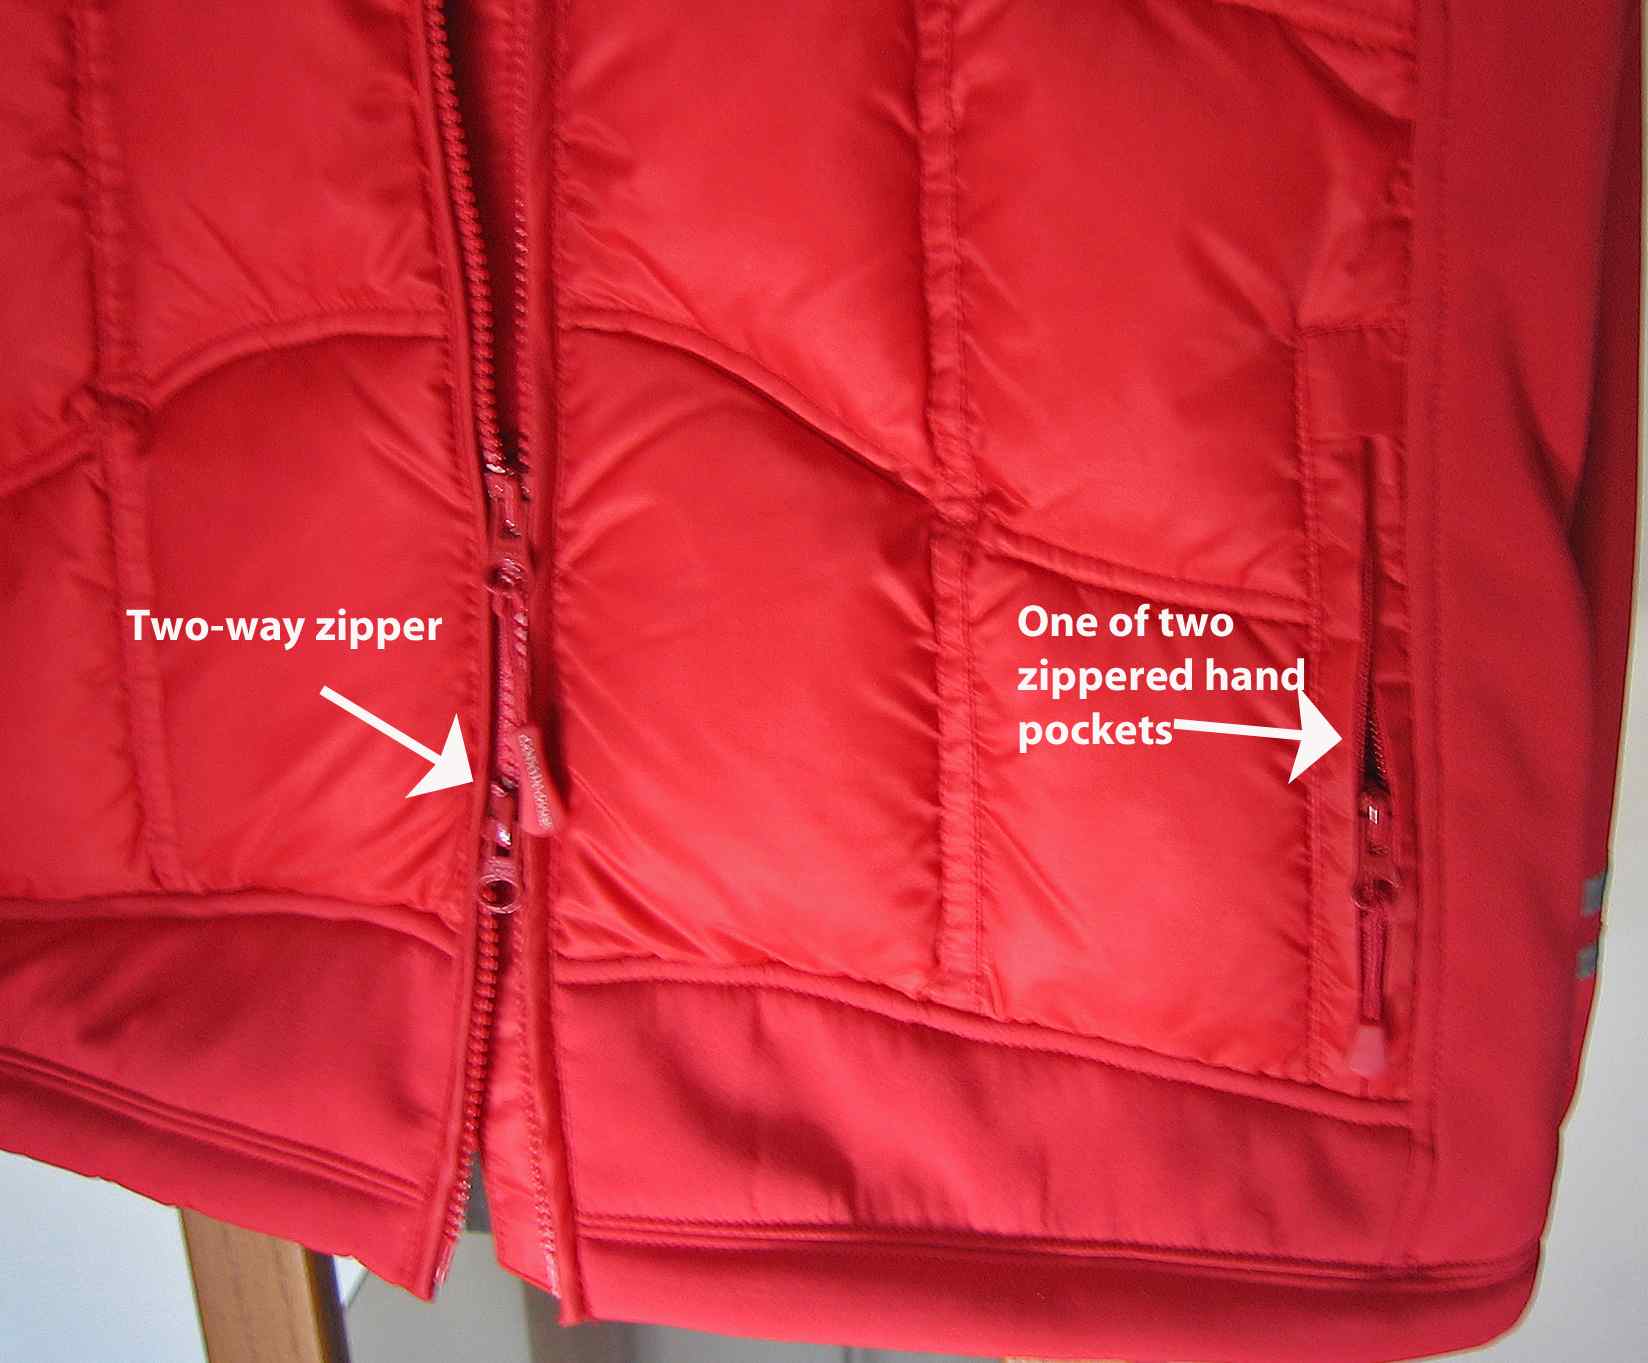 Hand pocket zipper, front zipper